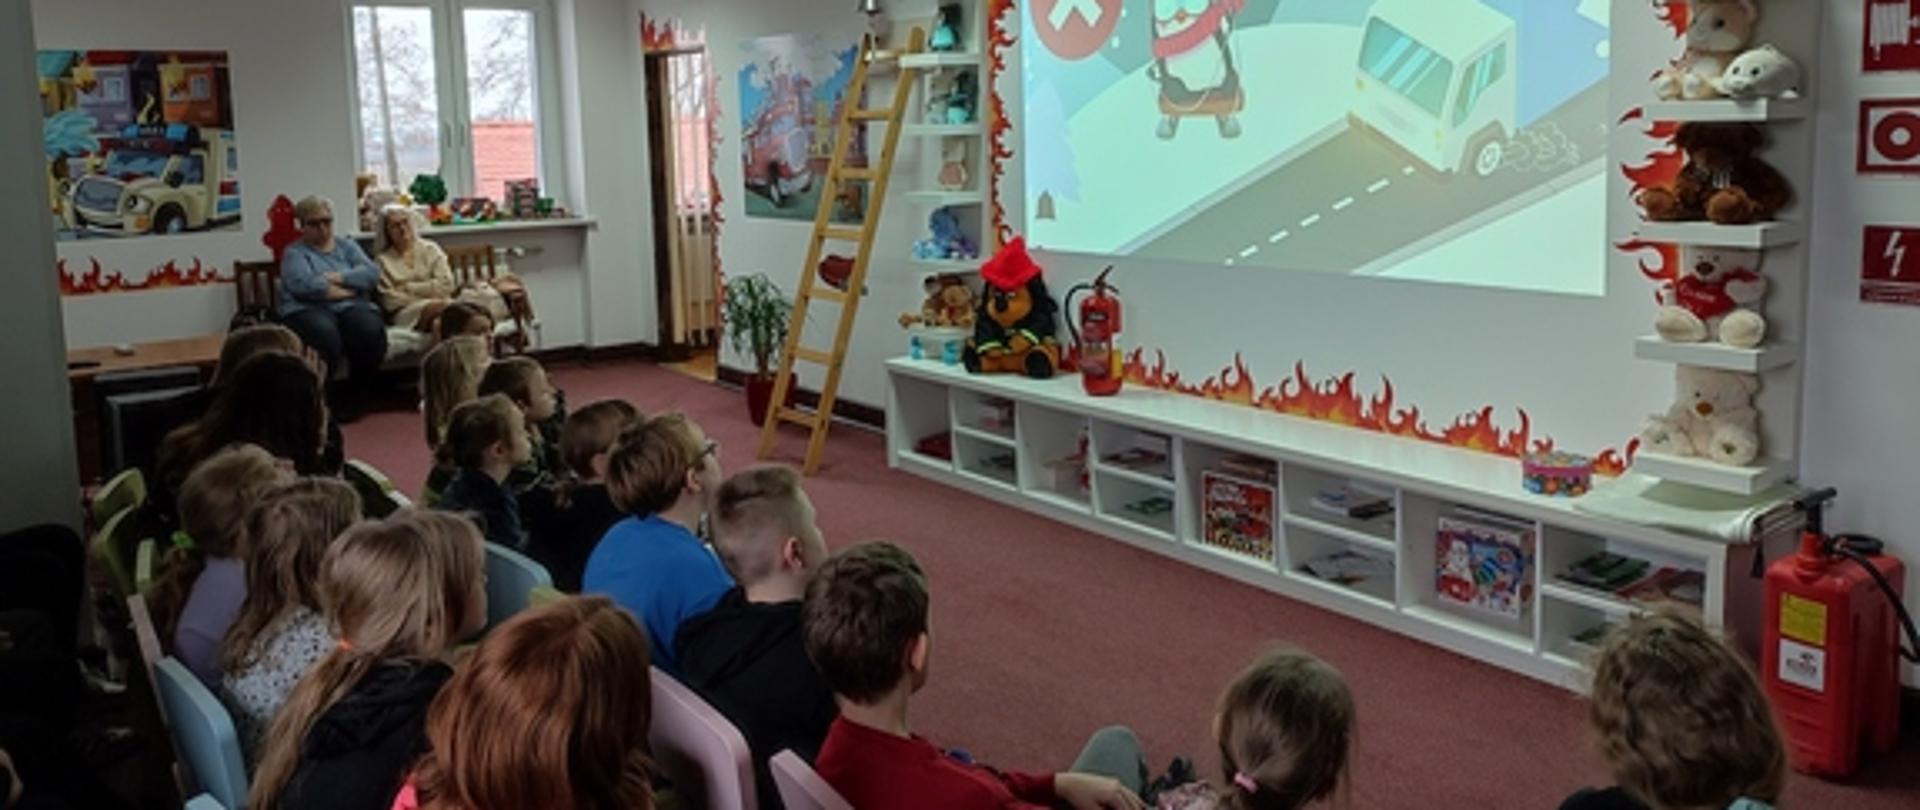 Dzieci ze Szkoły Podstawowej nr 3 w Łowiczu siedzą na krzesełkach i oglądają film wyświetlany na ścianie w tle drabina drewniana oraz okno pod którym siedzą dwie opiekunki na ścianach kolorowe infografiki na pierwszym planie czerwona hydronetka na podłodze ciemnobrązowa wykładzina 